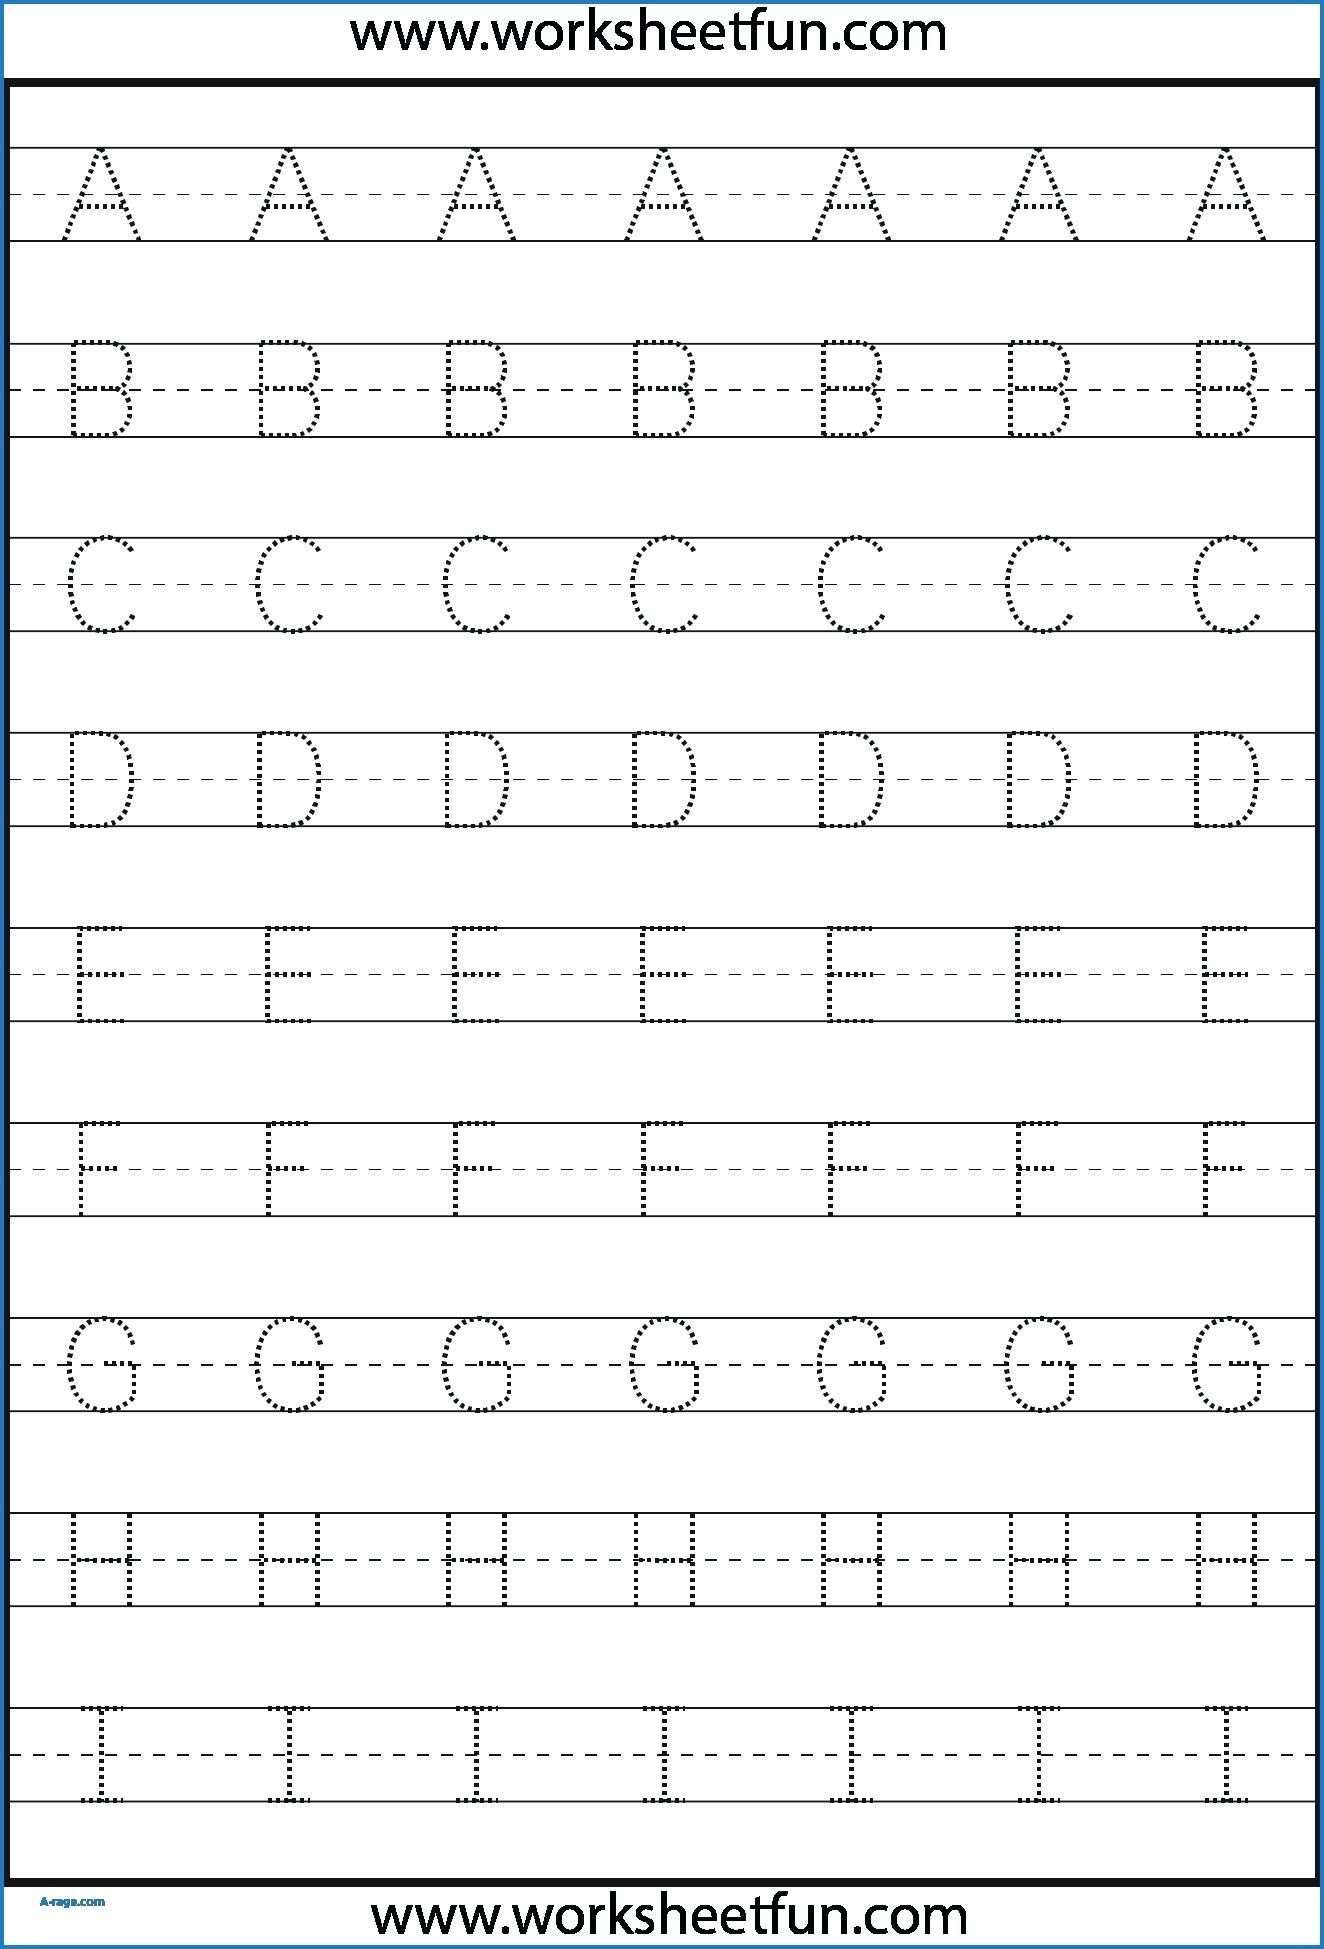 Kindergarten Letter Tracing Worksheets Pdf - Wallpaper Image for Letter Tracing Worksheets Pdf A-Z